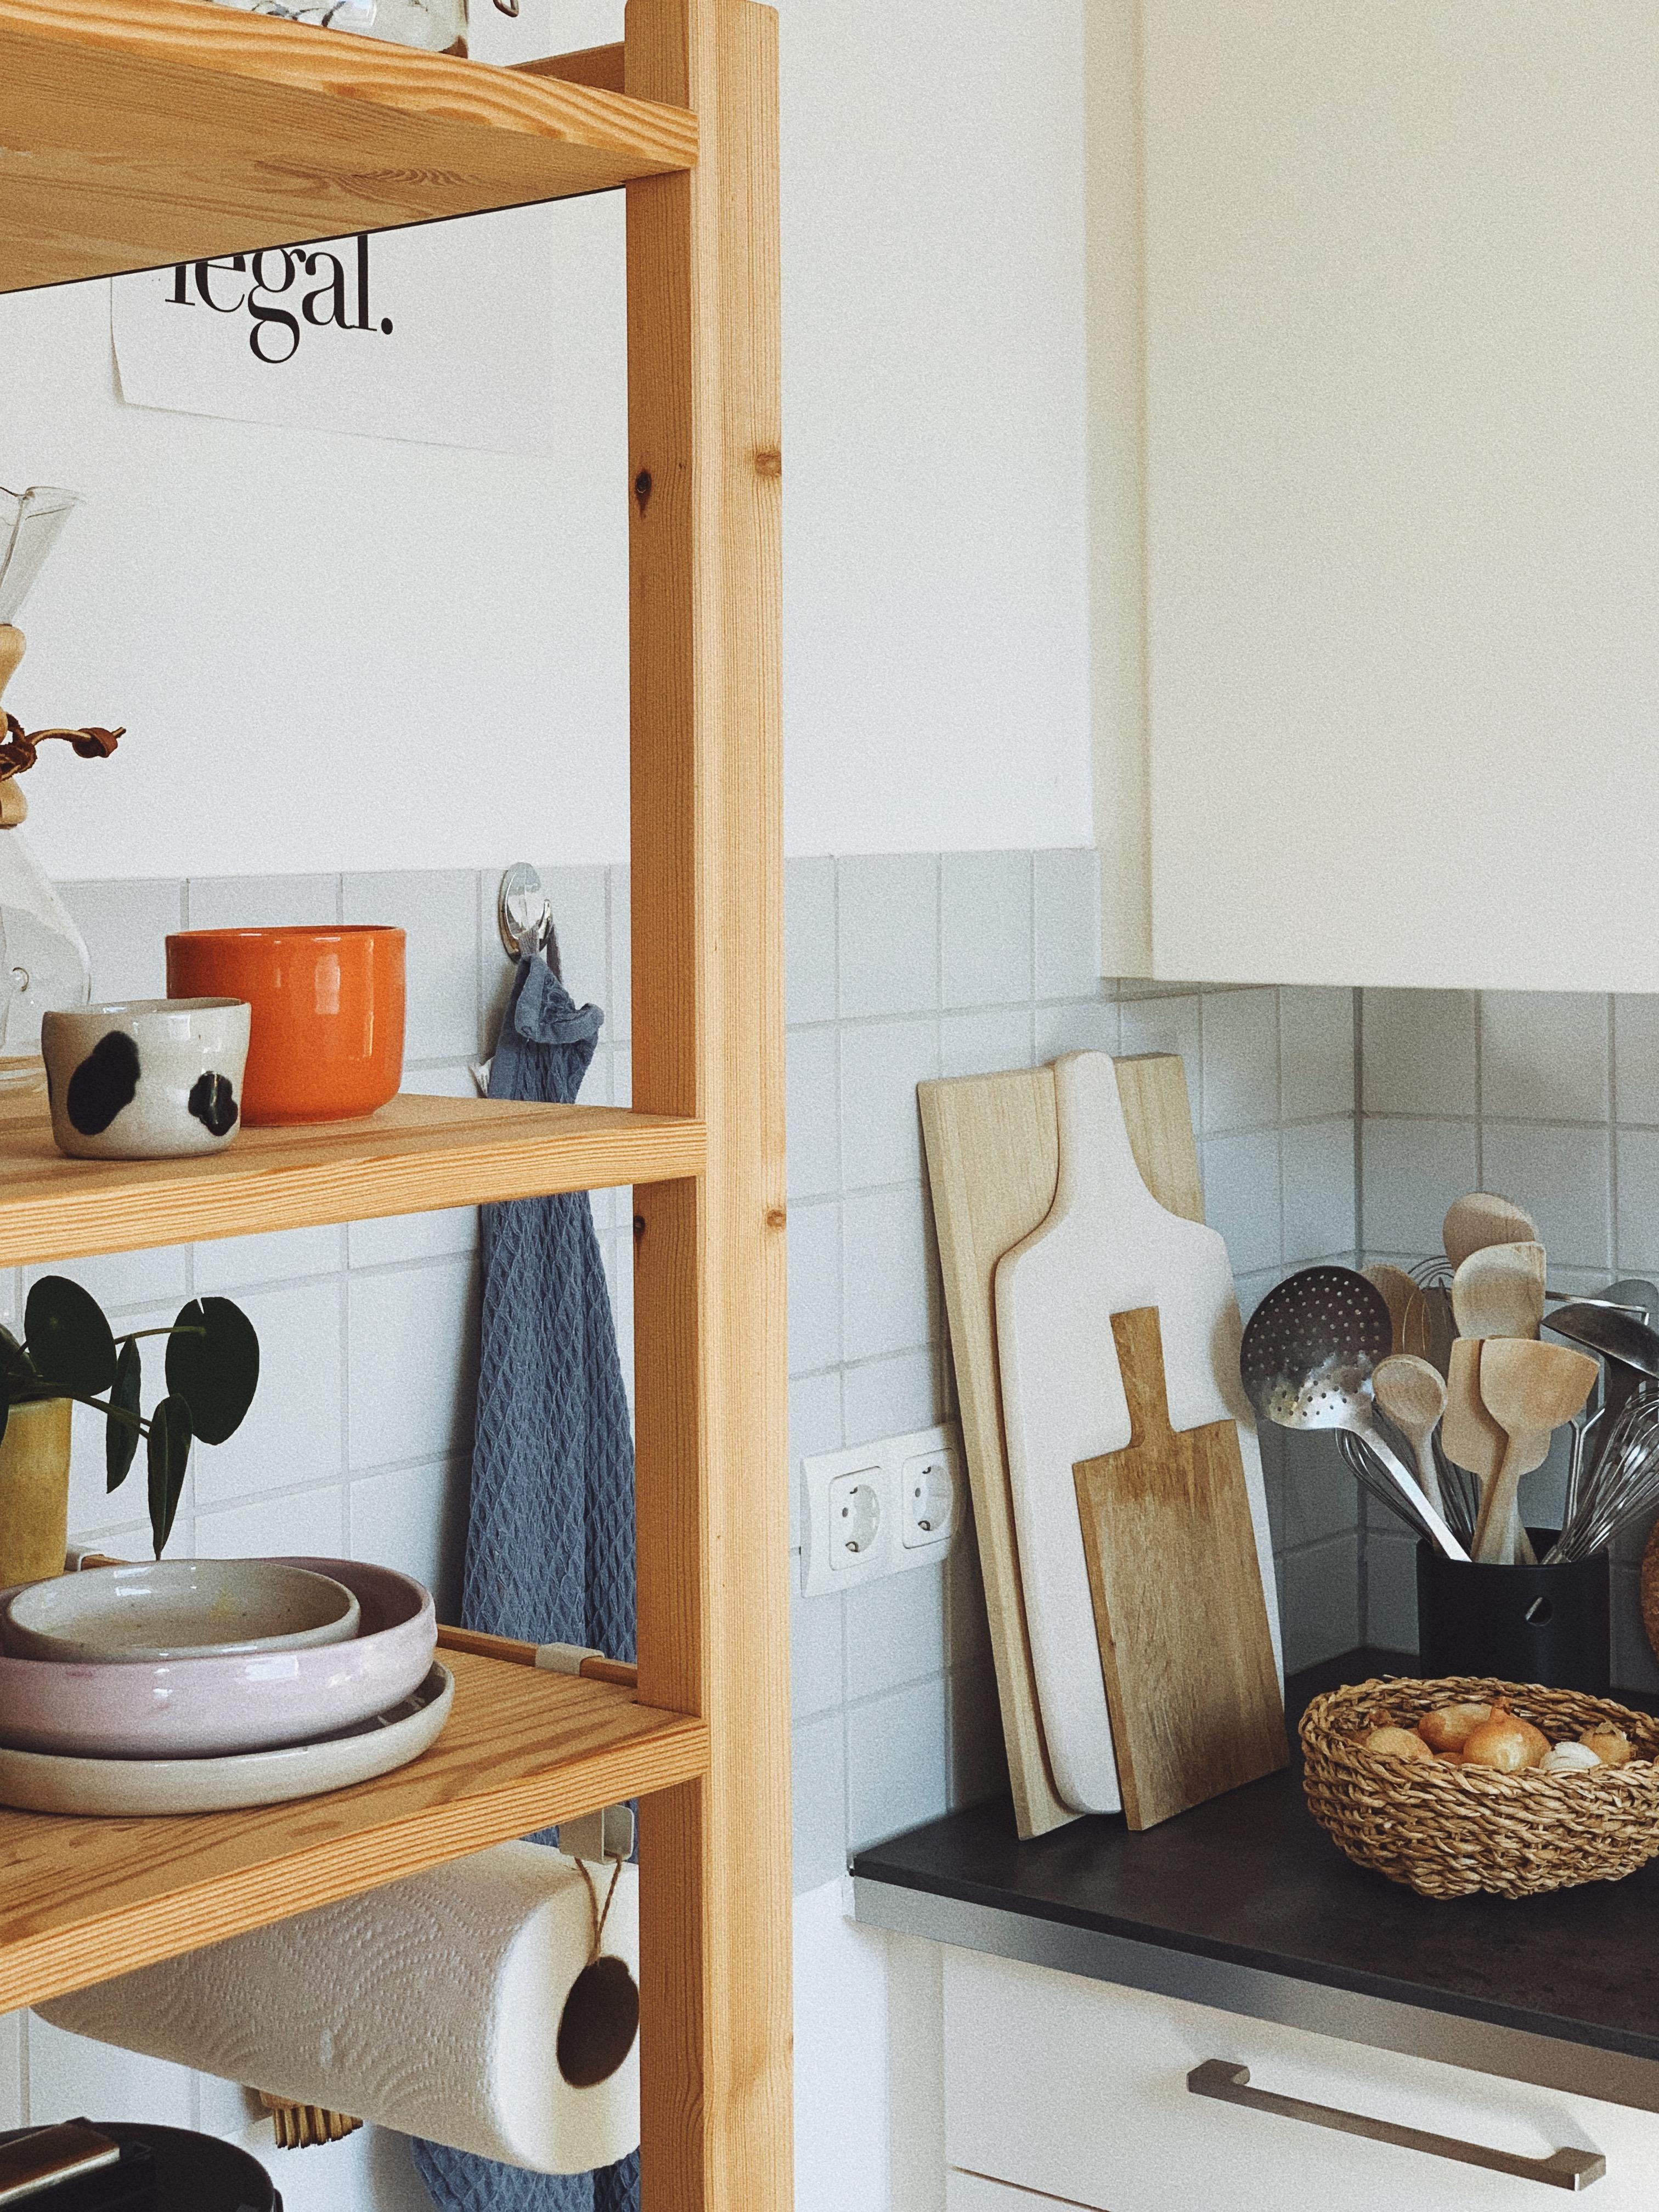 Kitchenstories. 💛 #kitchen #shelfie #ikeaivar #interior #home #ceramics